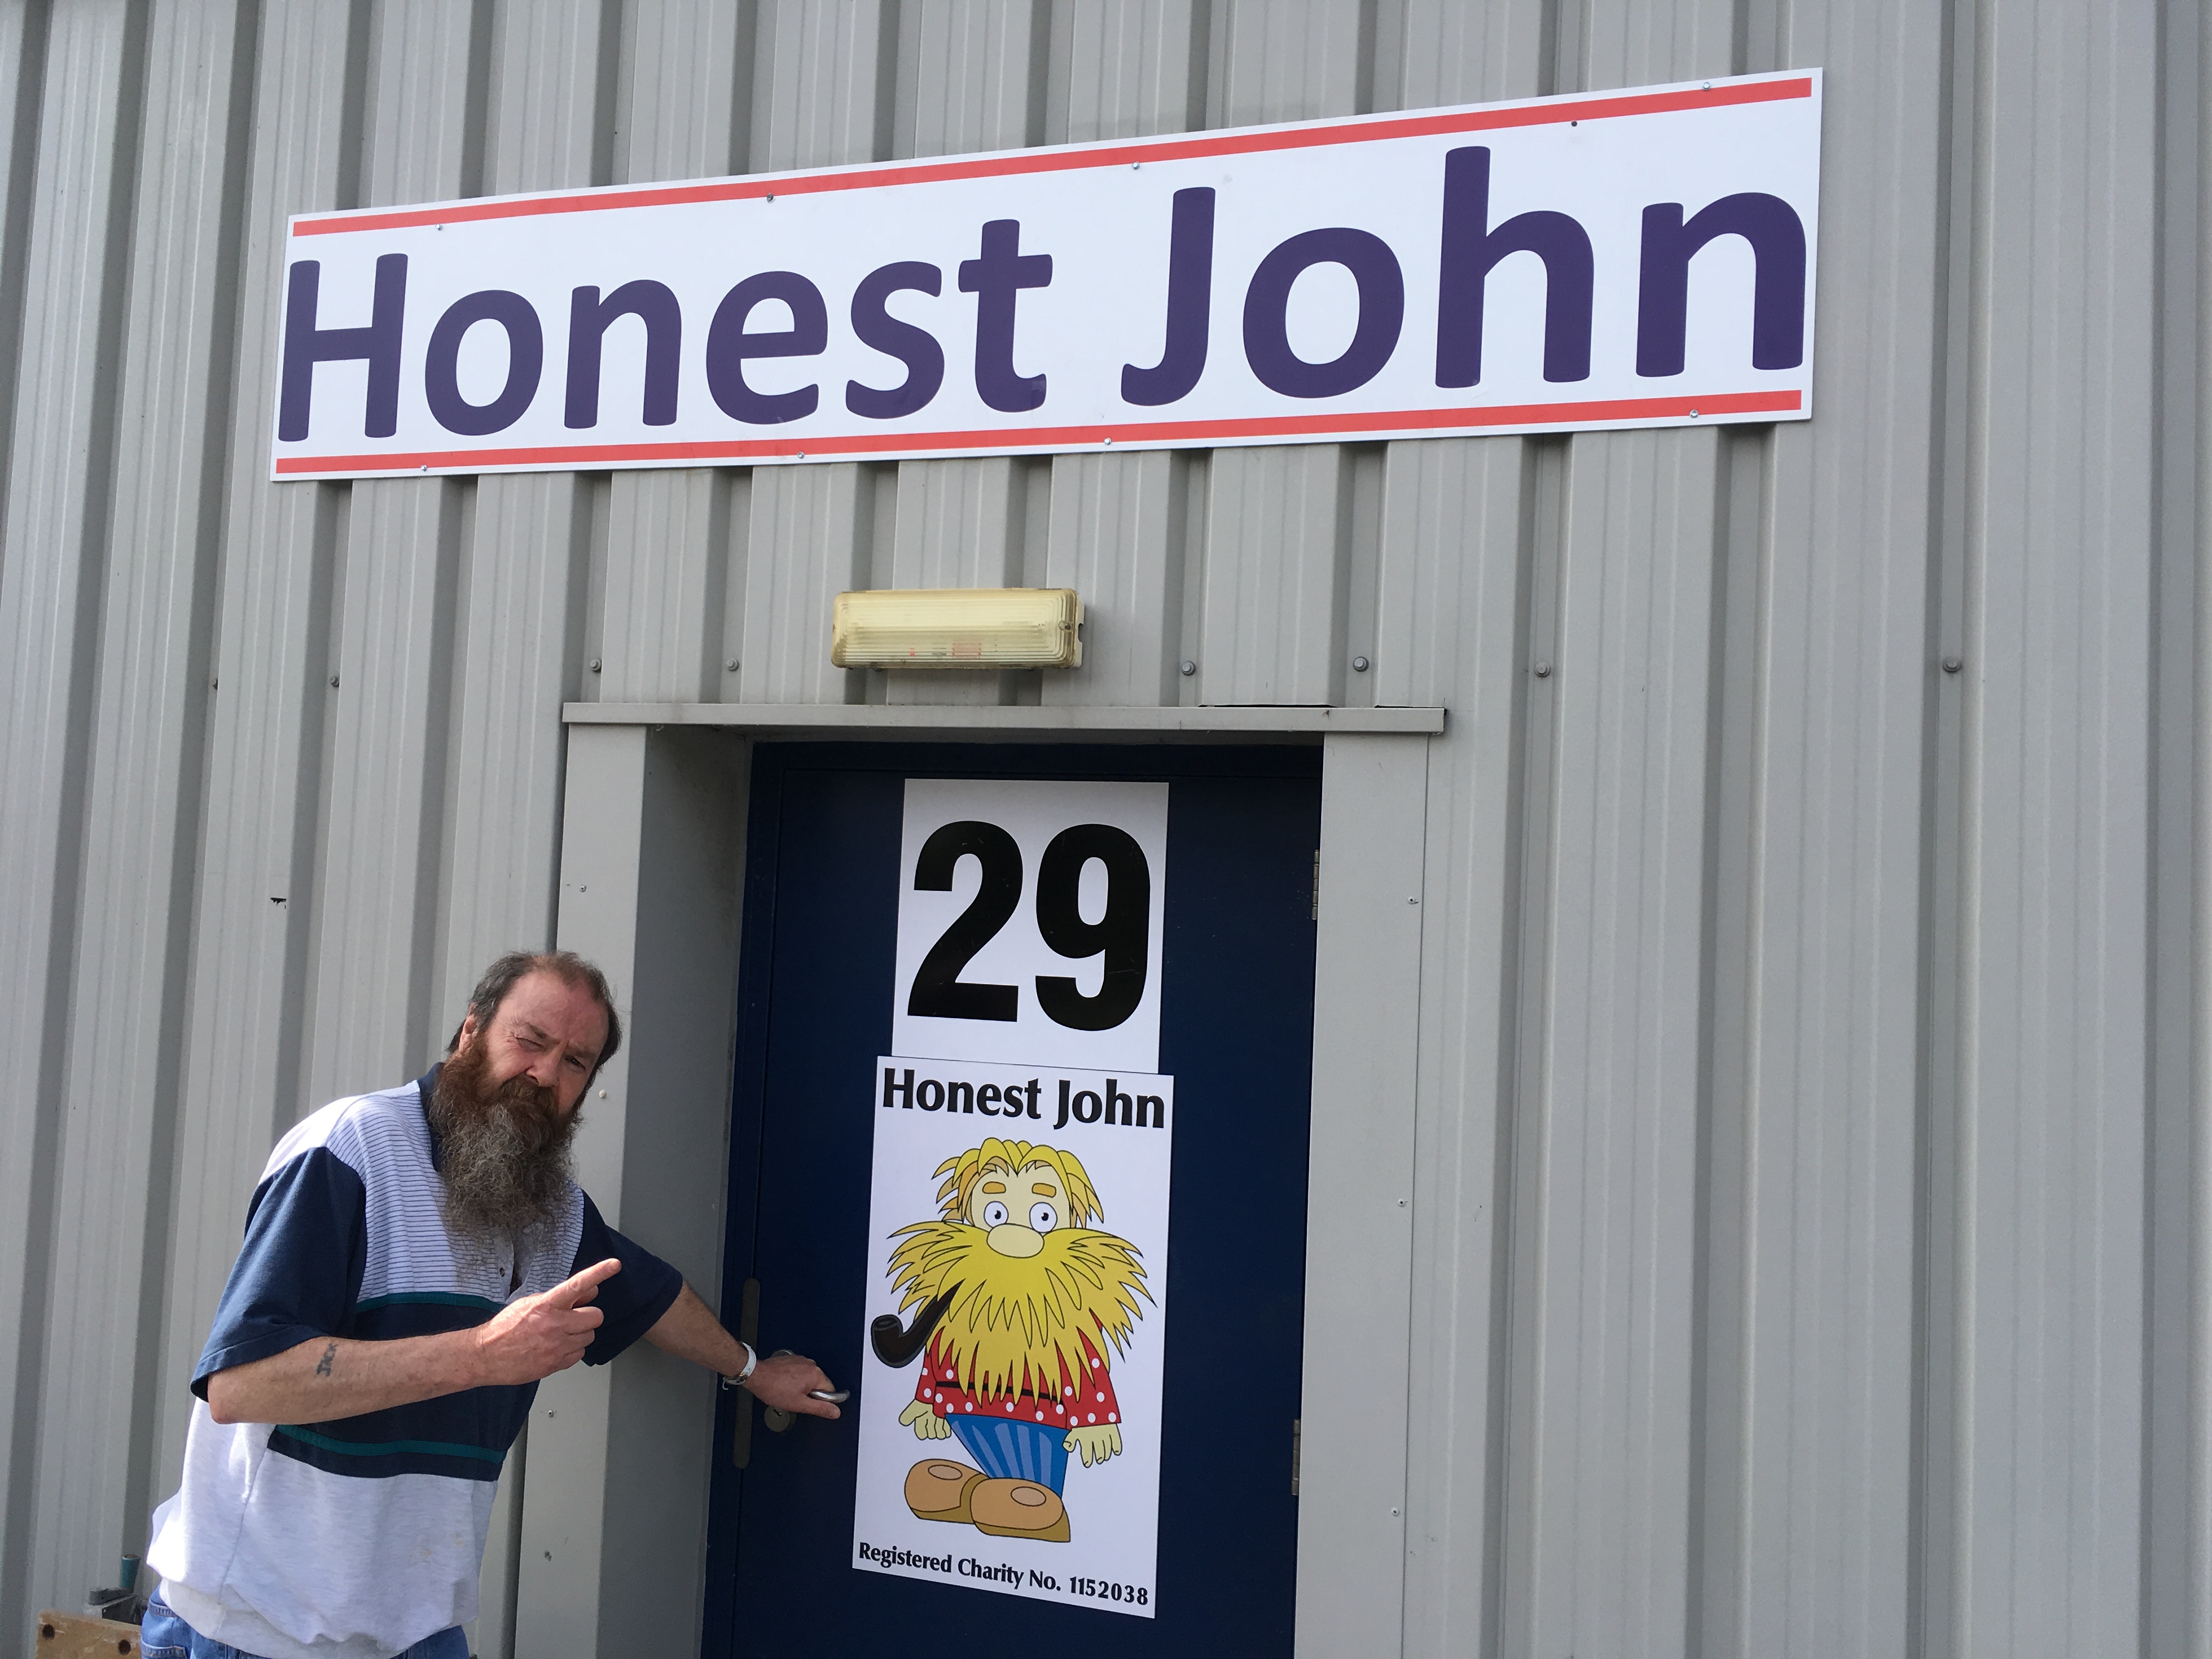 Honest John